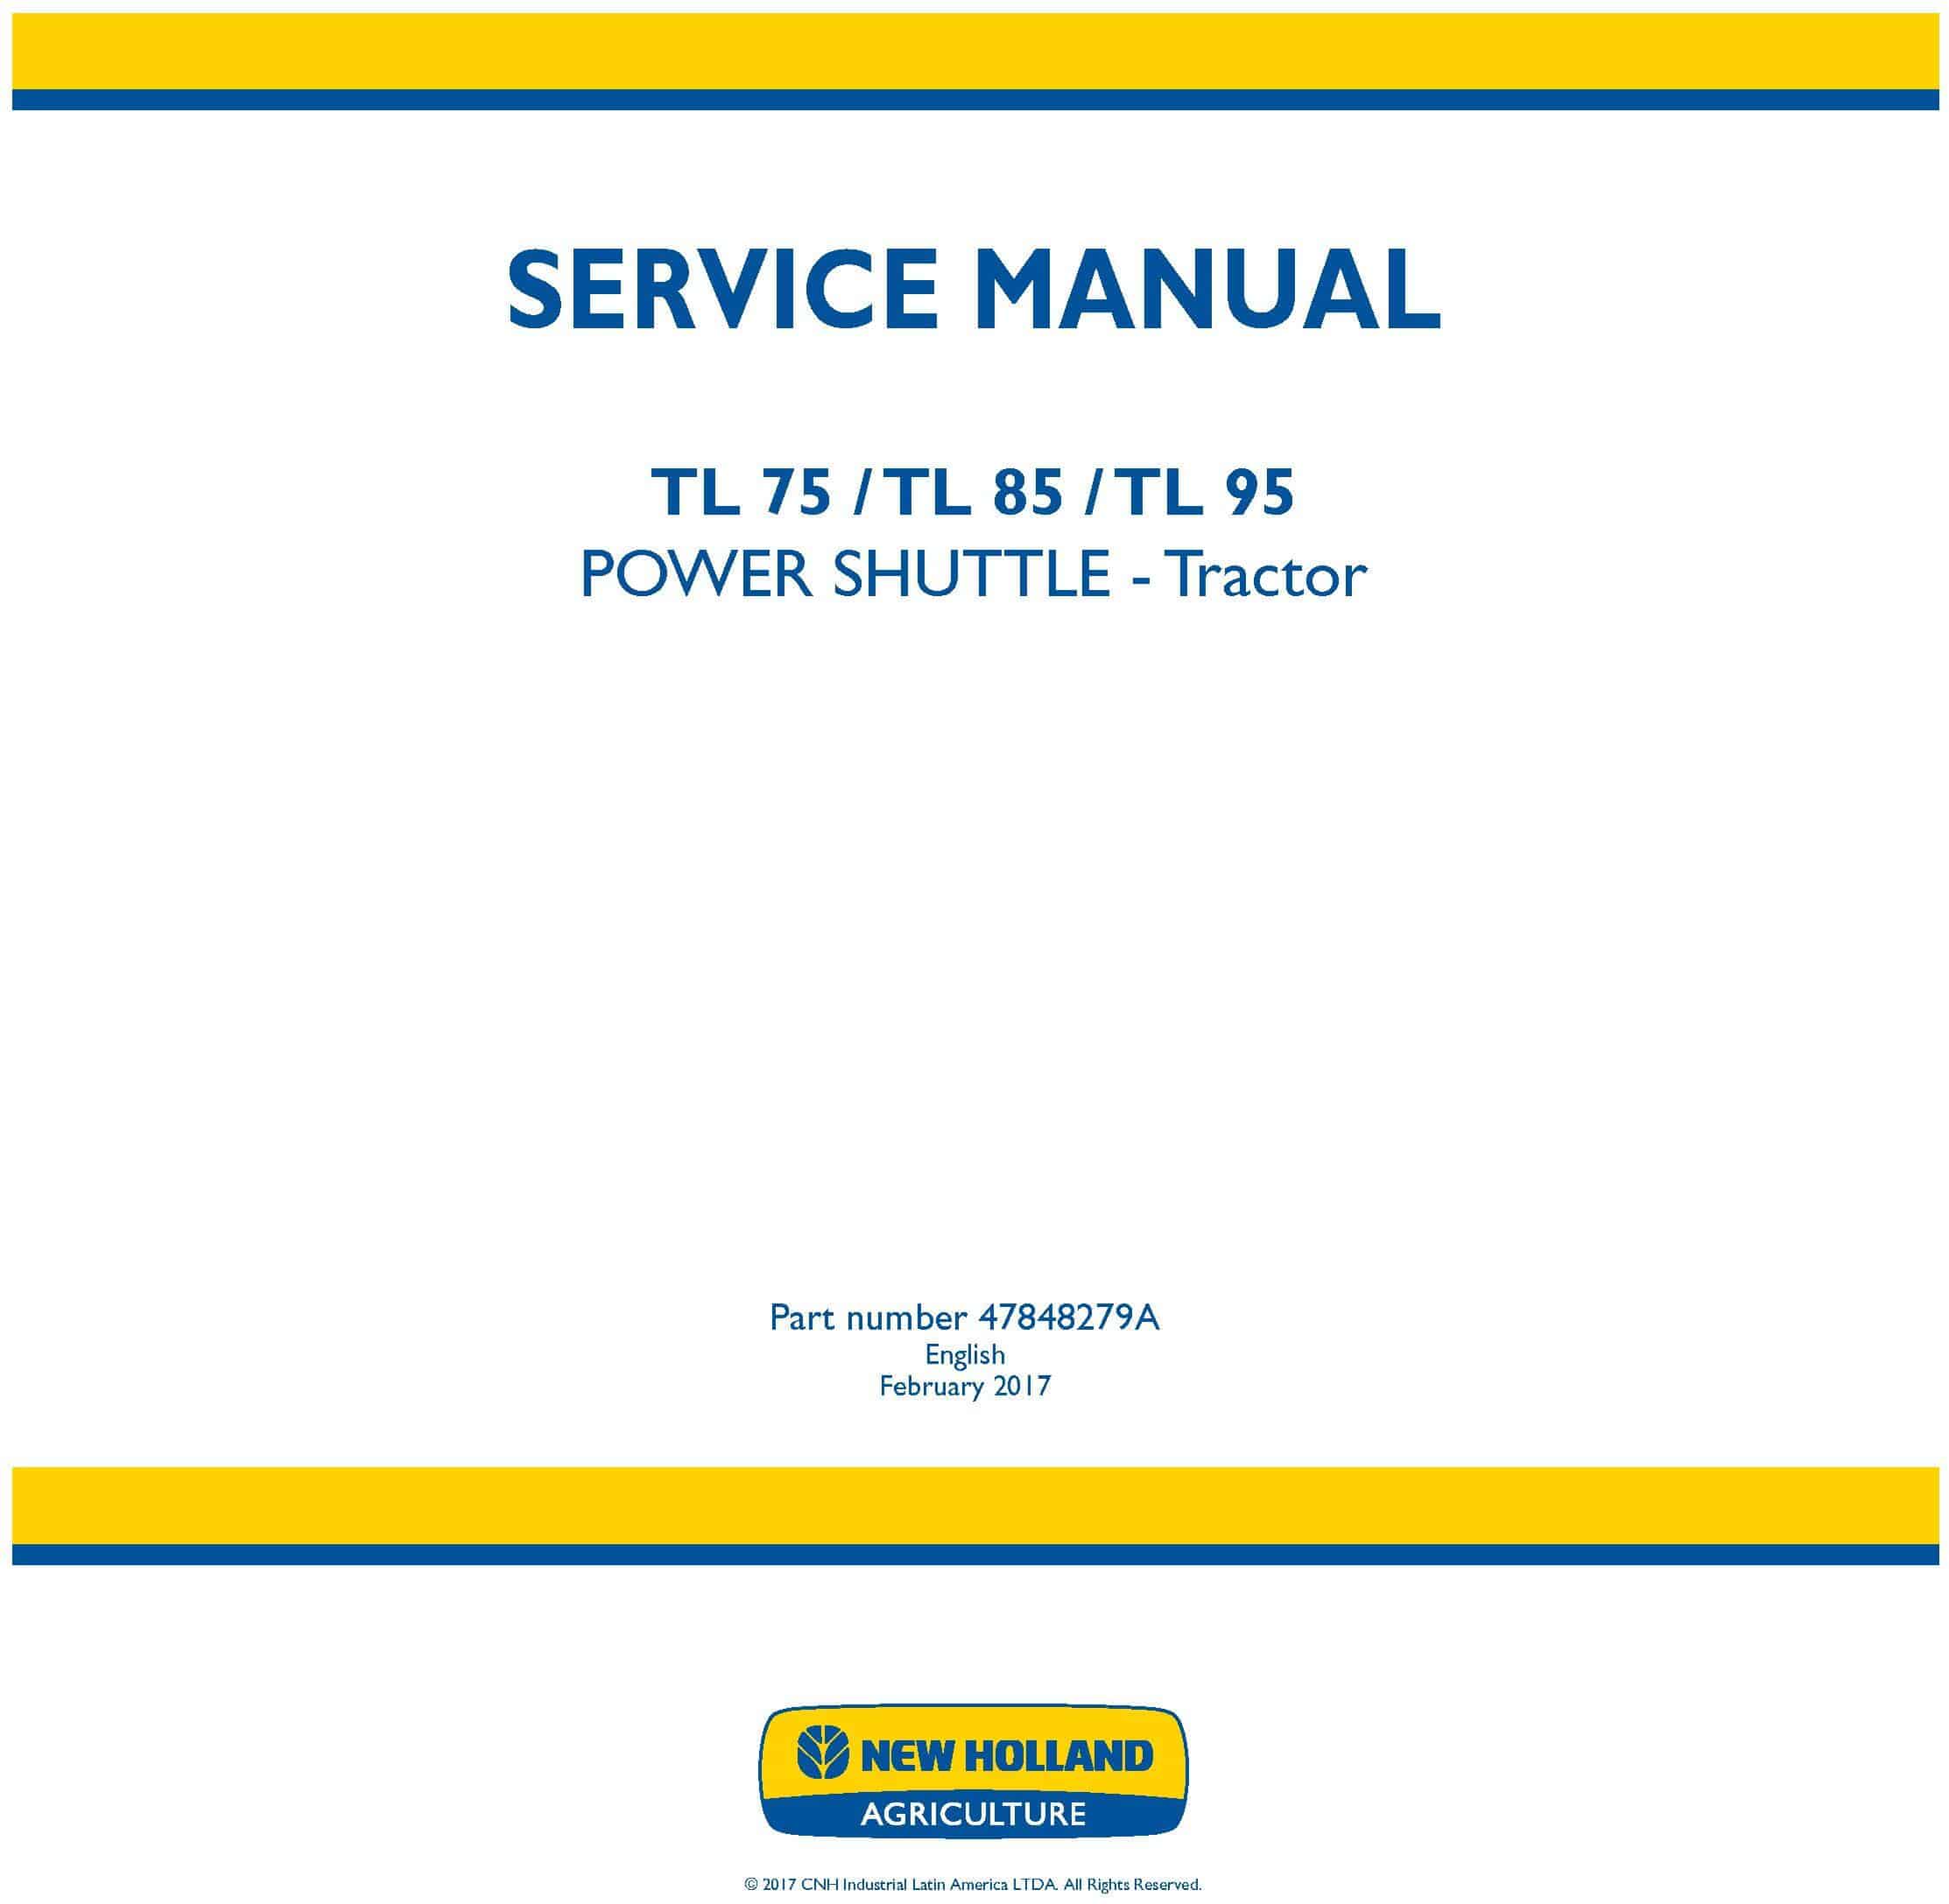 New Holland TL75E TL85E TL95E Power shuttle tractor Service Manual